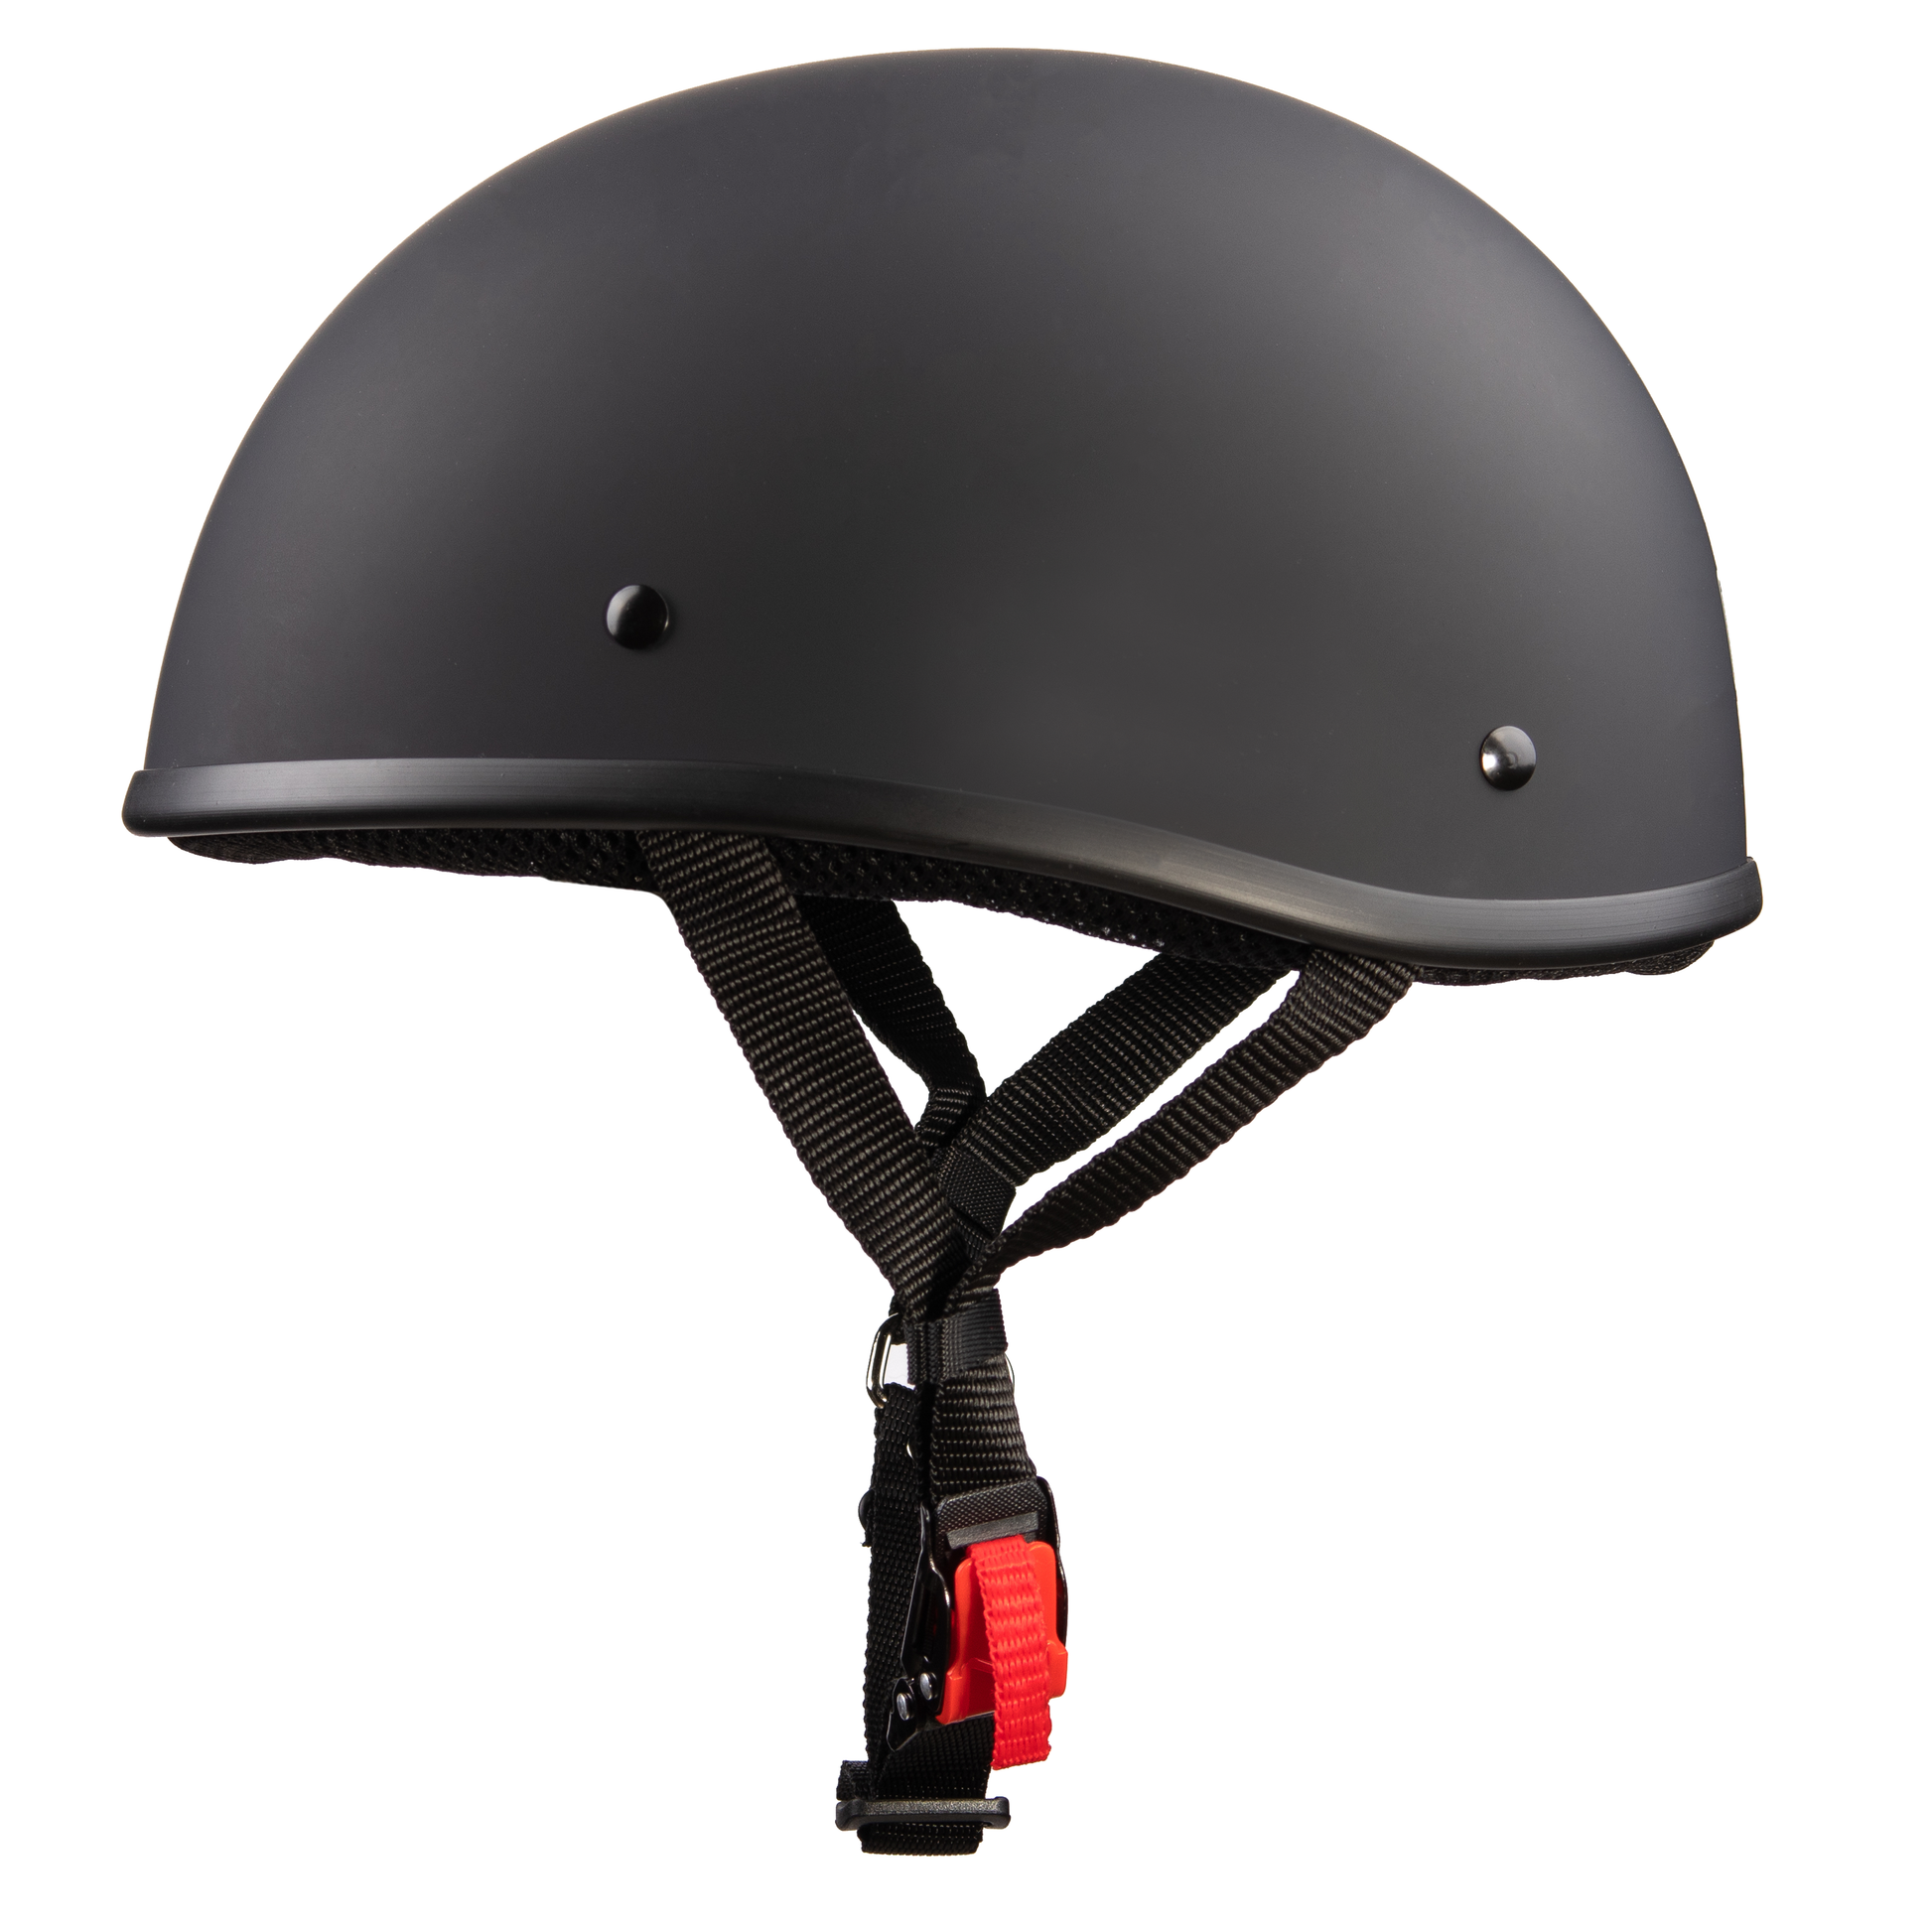 WCL Helmet Beanie Motorcycle Half Helmet- Smallest and Lightest